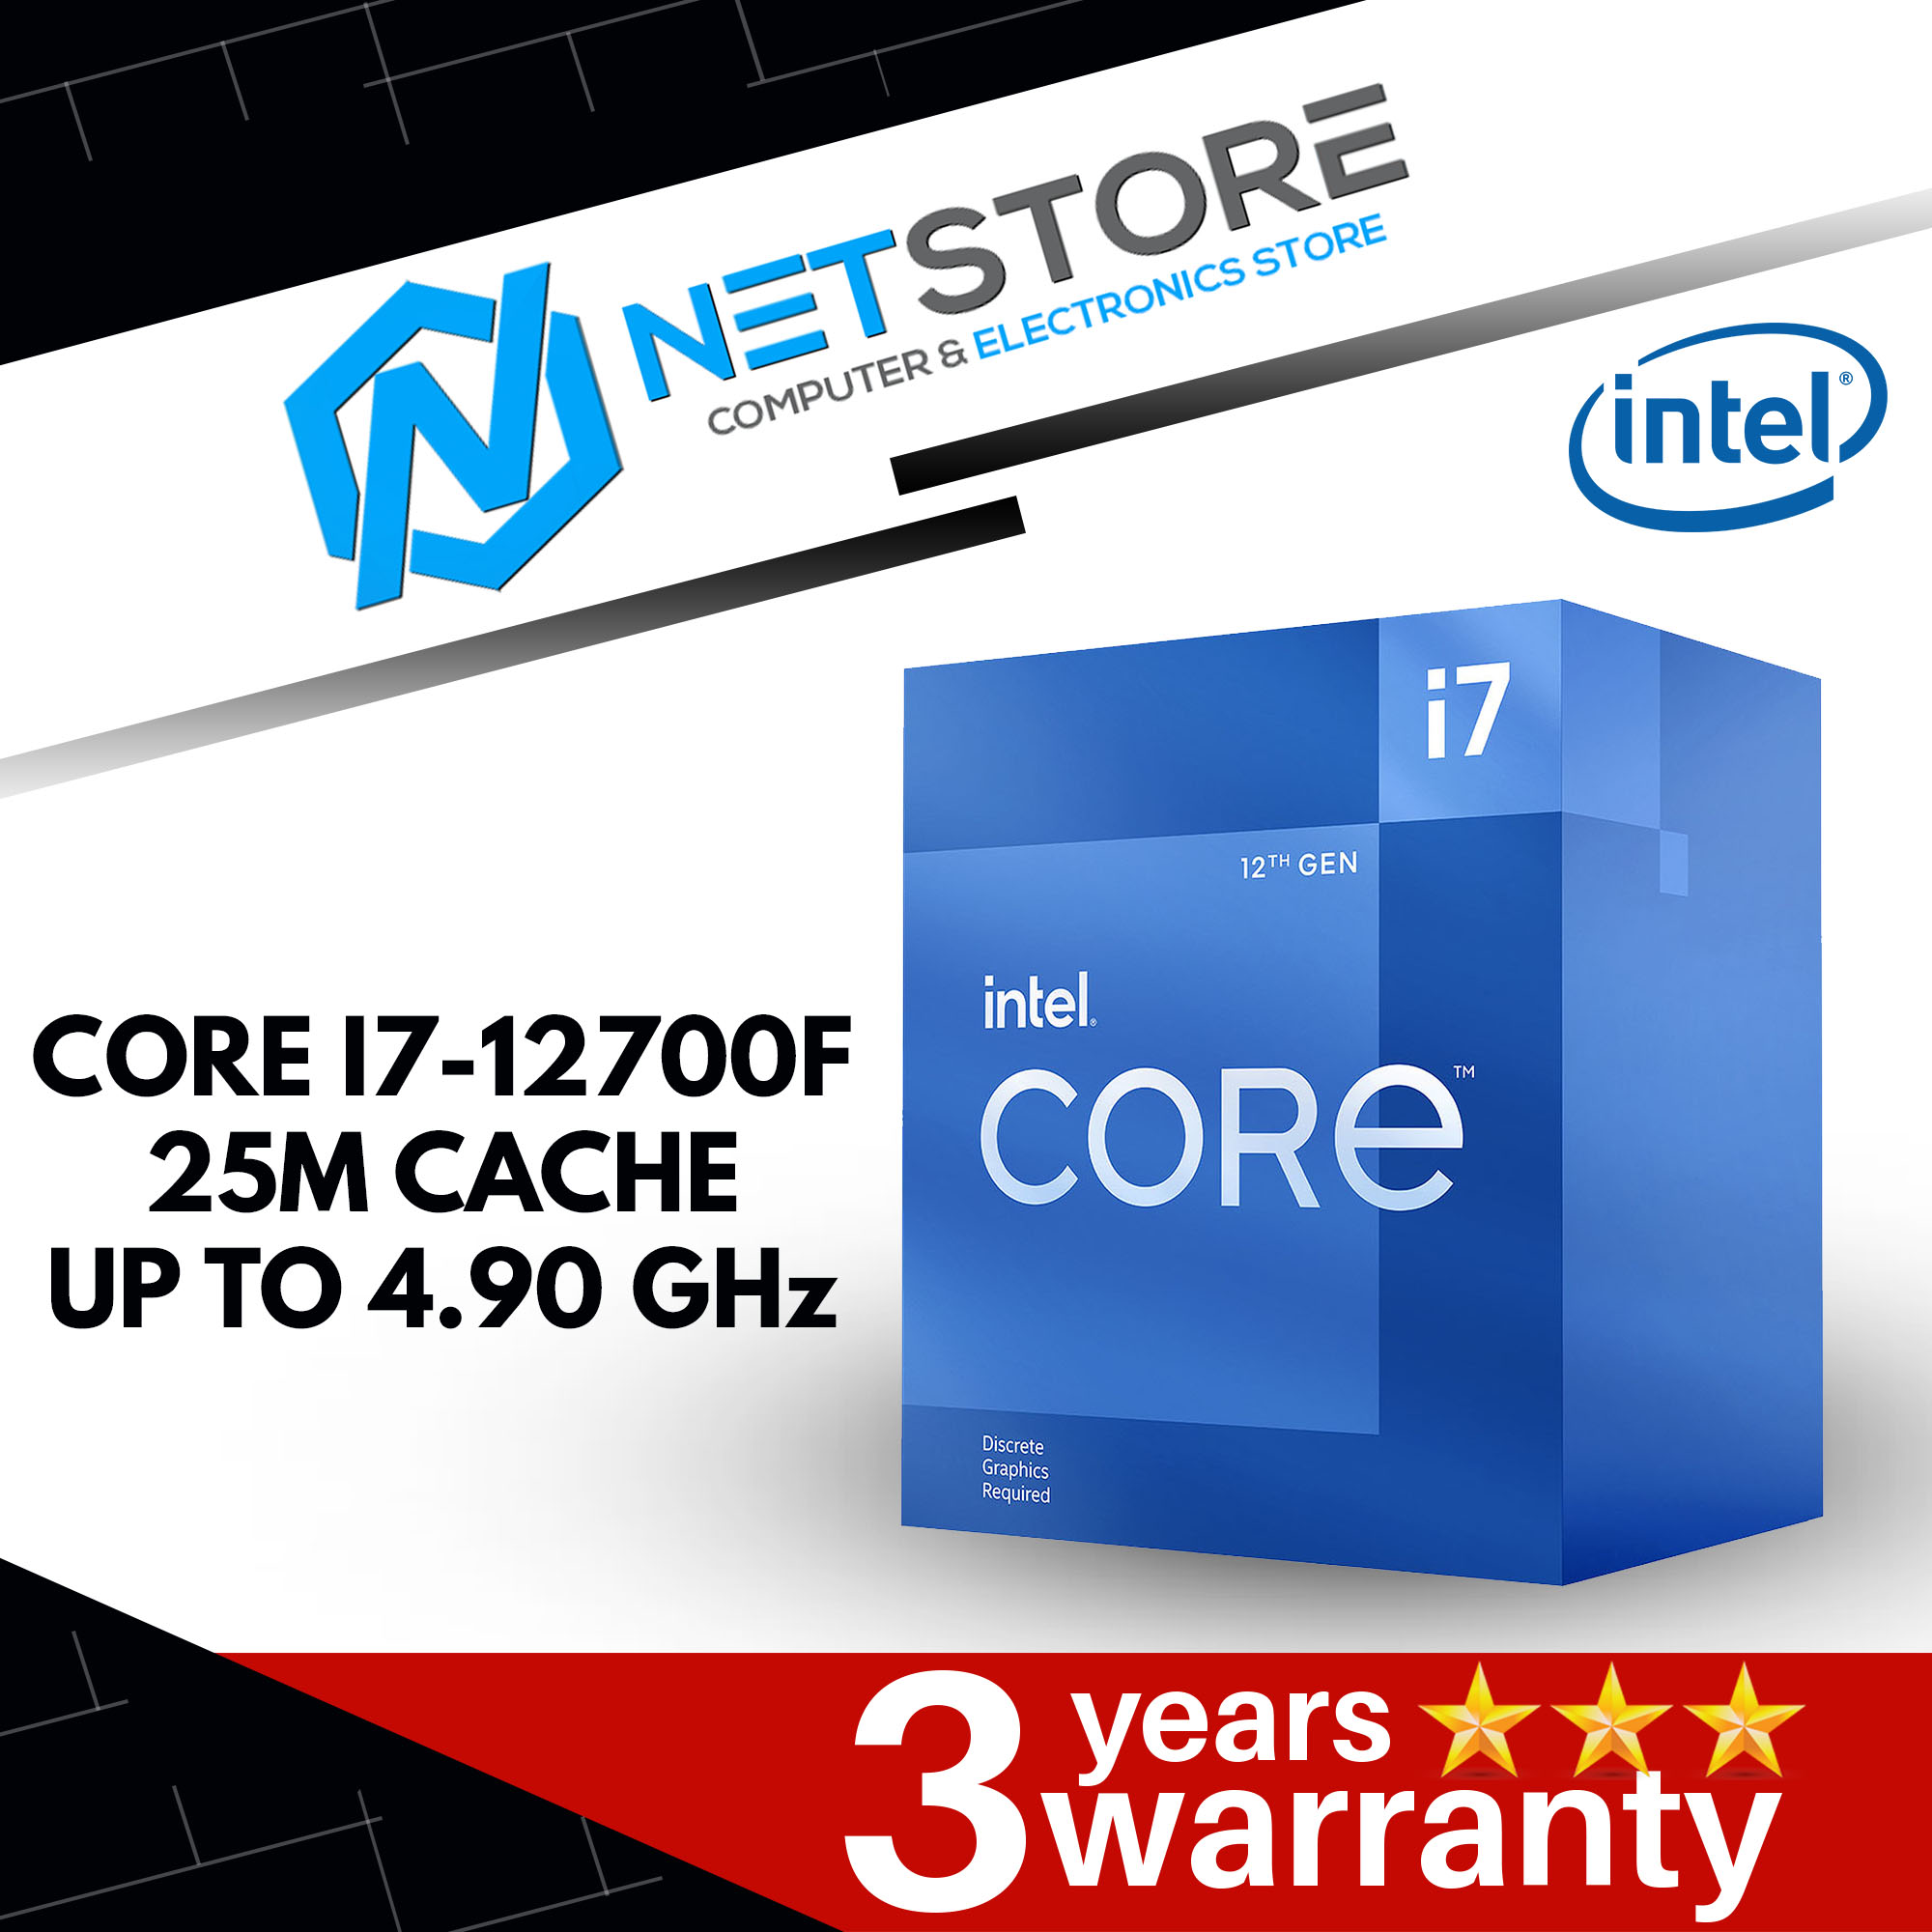 NETSTORE CUSTOM PC - i7-12700f, 16GB RAM, 512GB NVME SSD , RTX 3060